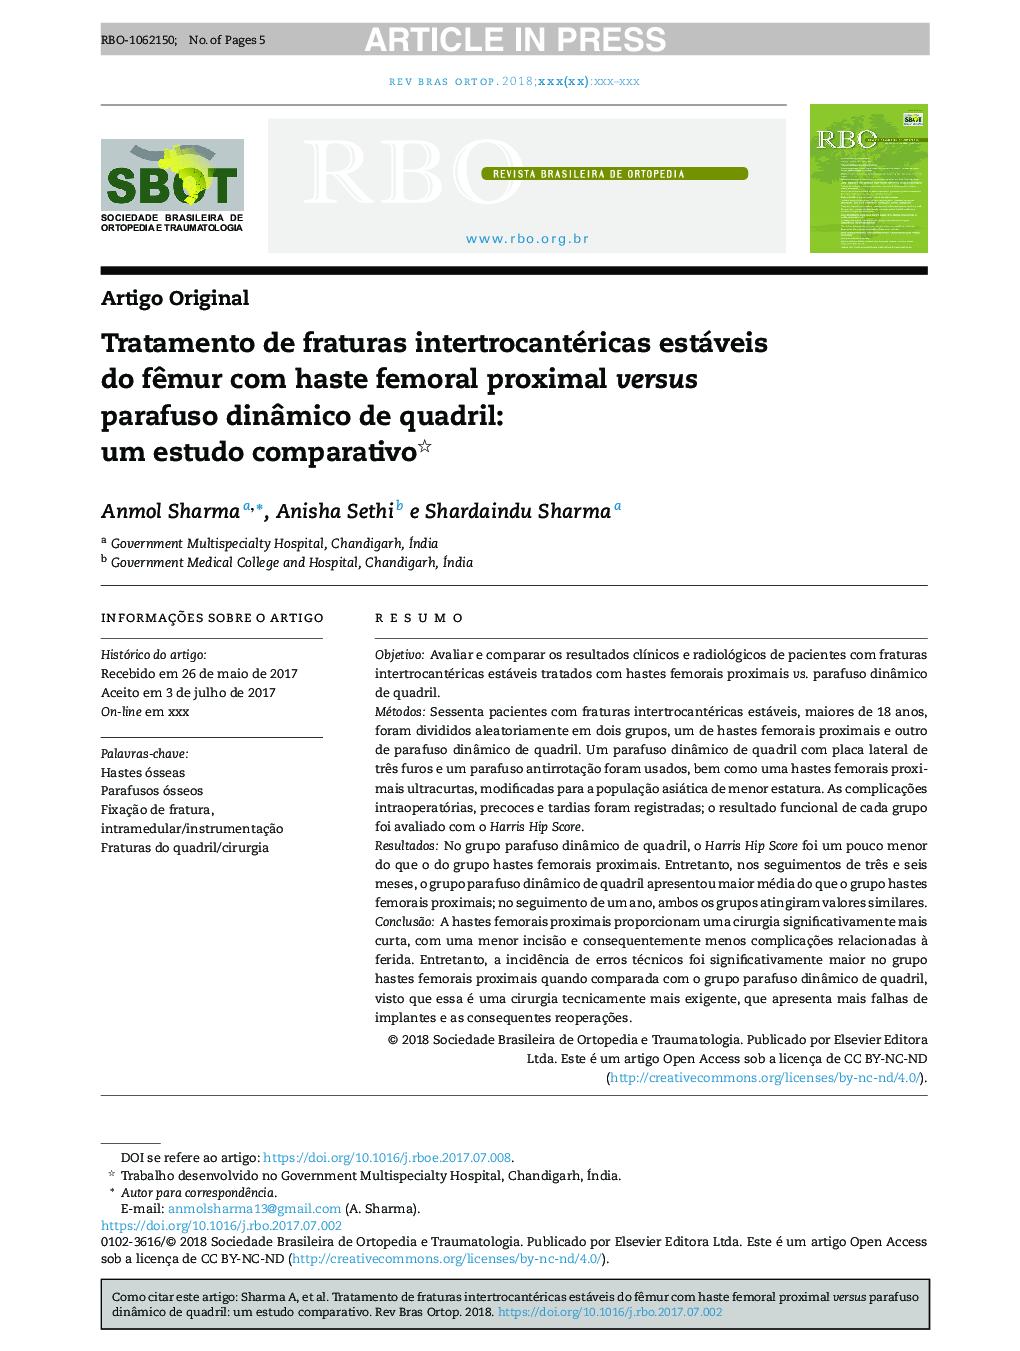 Tratamento de fraturas intertrocantéricas estáveis do fÃªmur com haste femoral proximal versus parafuso dinÃ¢mico de quadril: um estudo comparativo